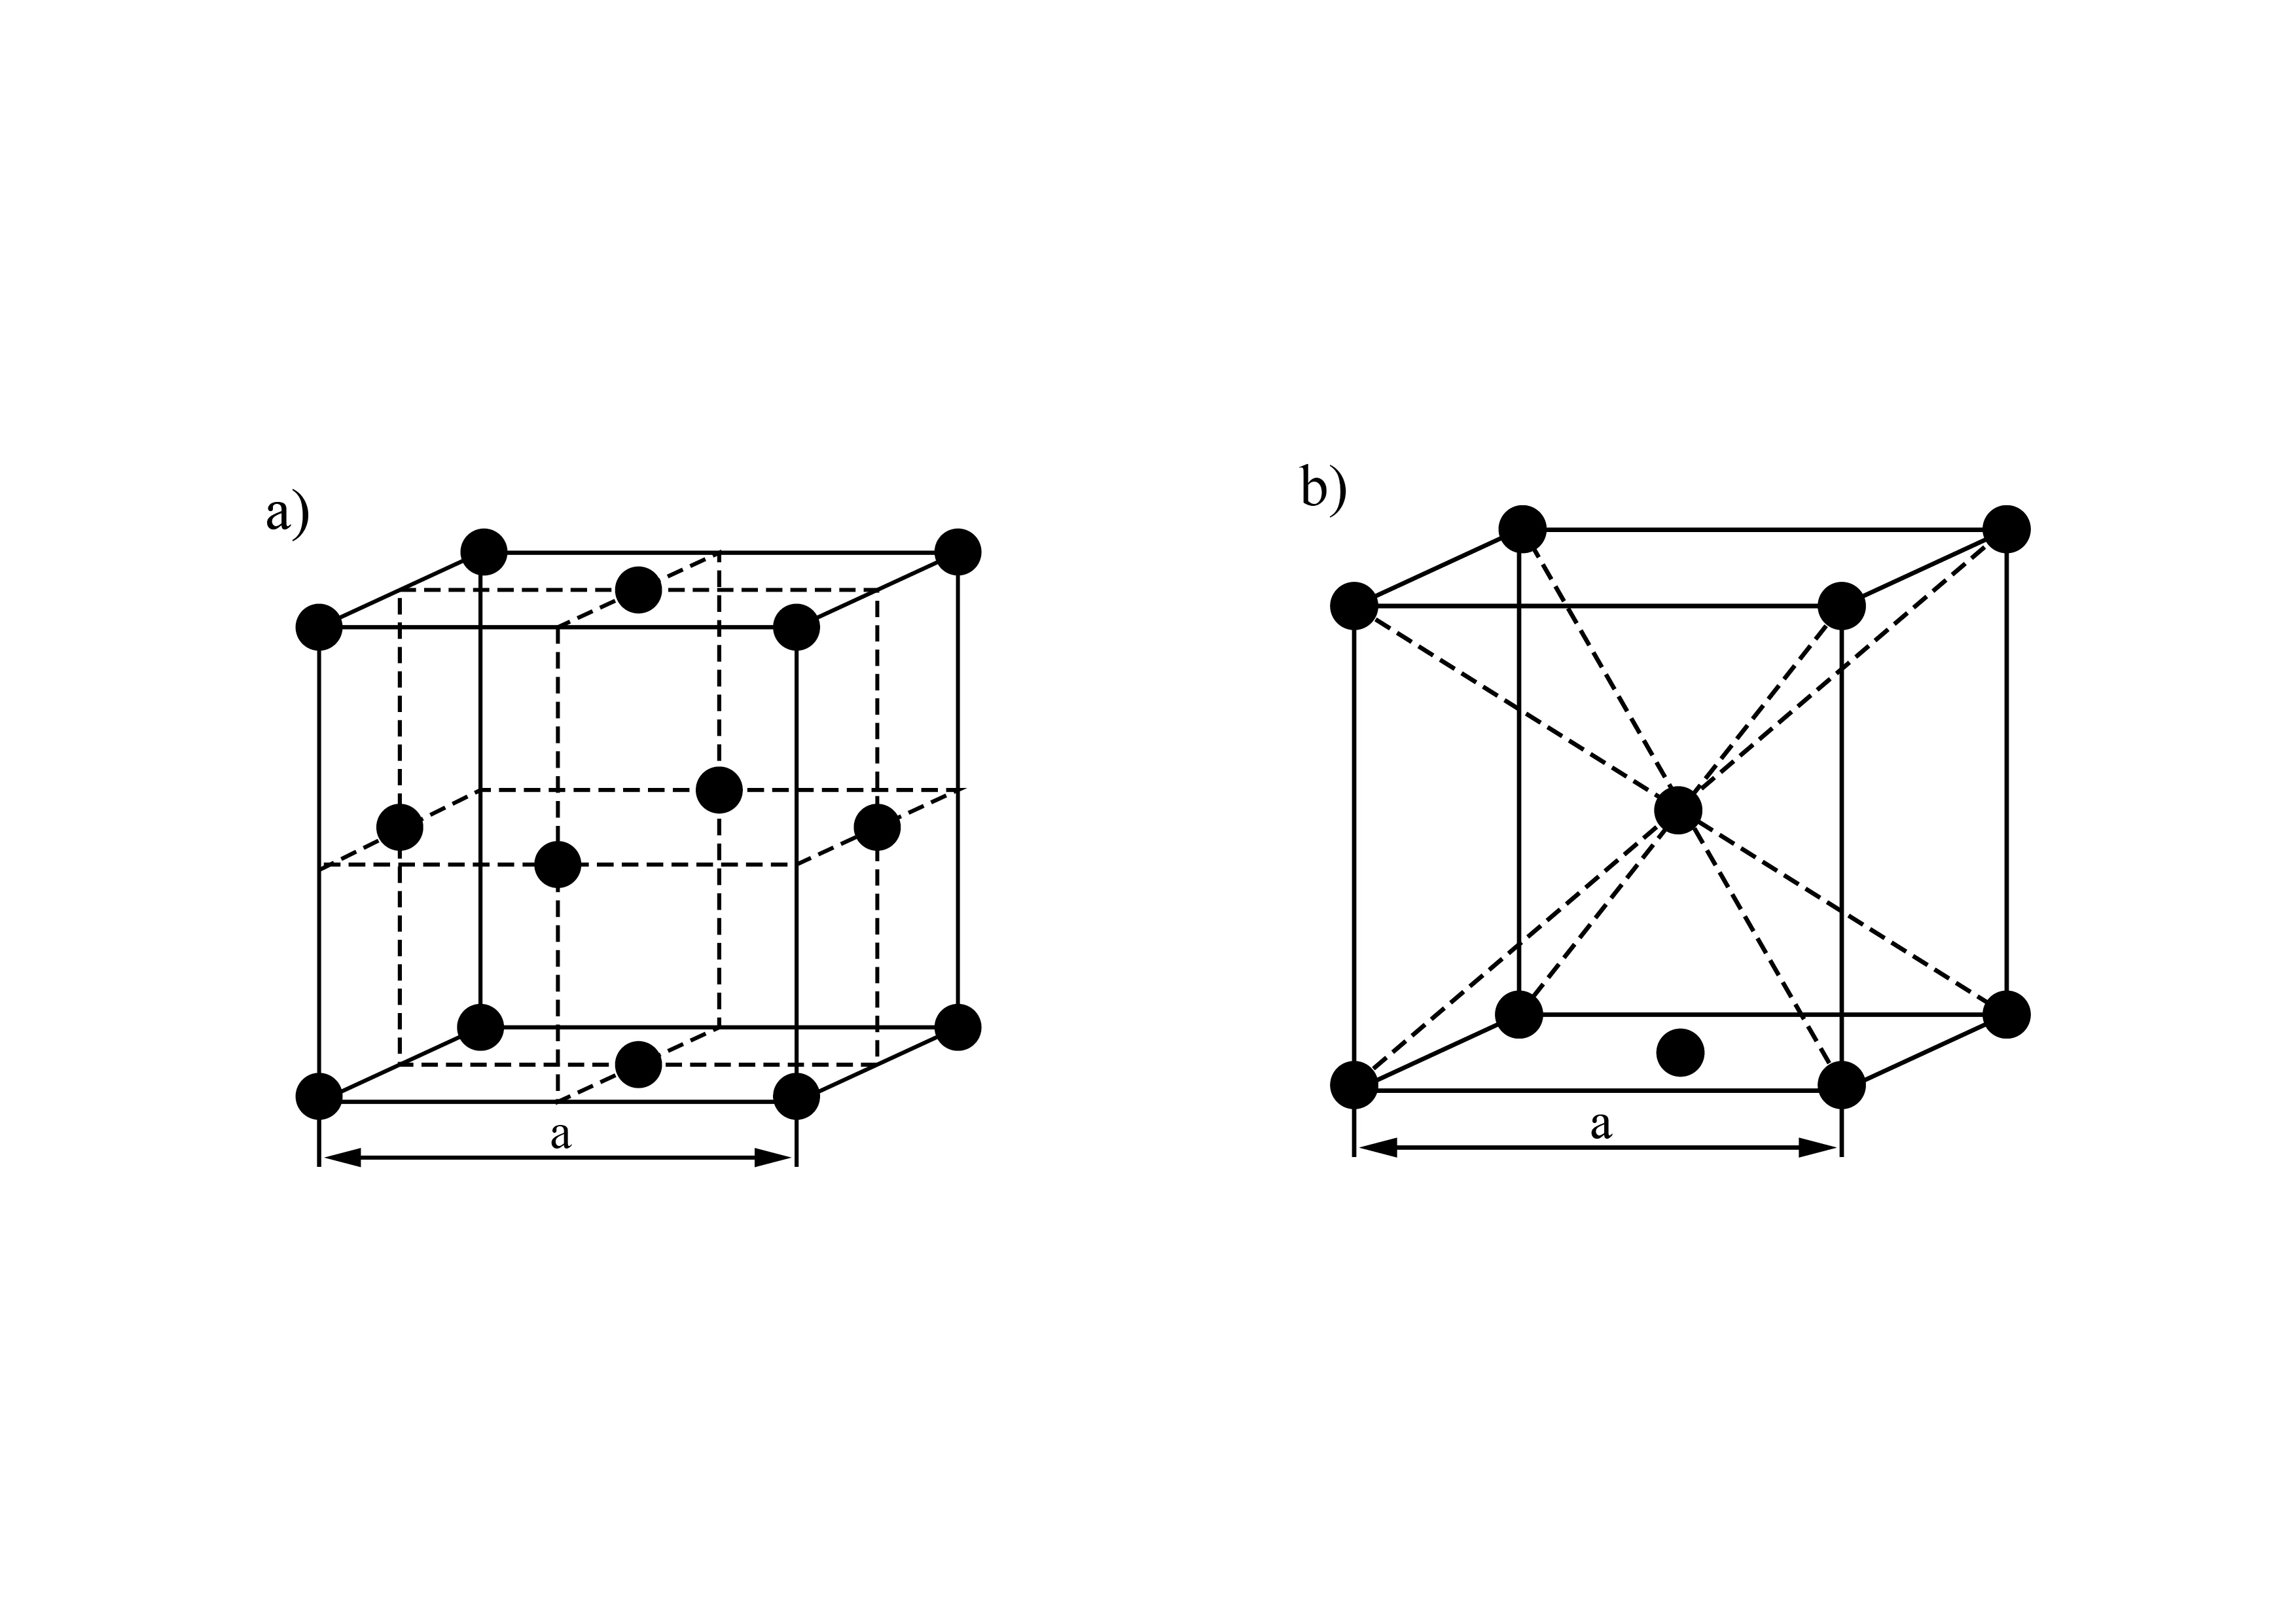 Komórki elementarne centrowane dla układu regularnego (kubicznego): a) ściennie centrowana, b) przestrzennie centrowana.